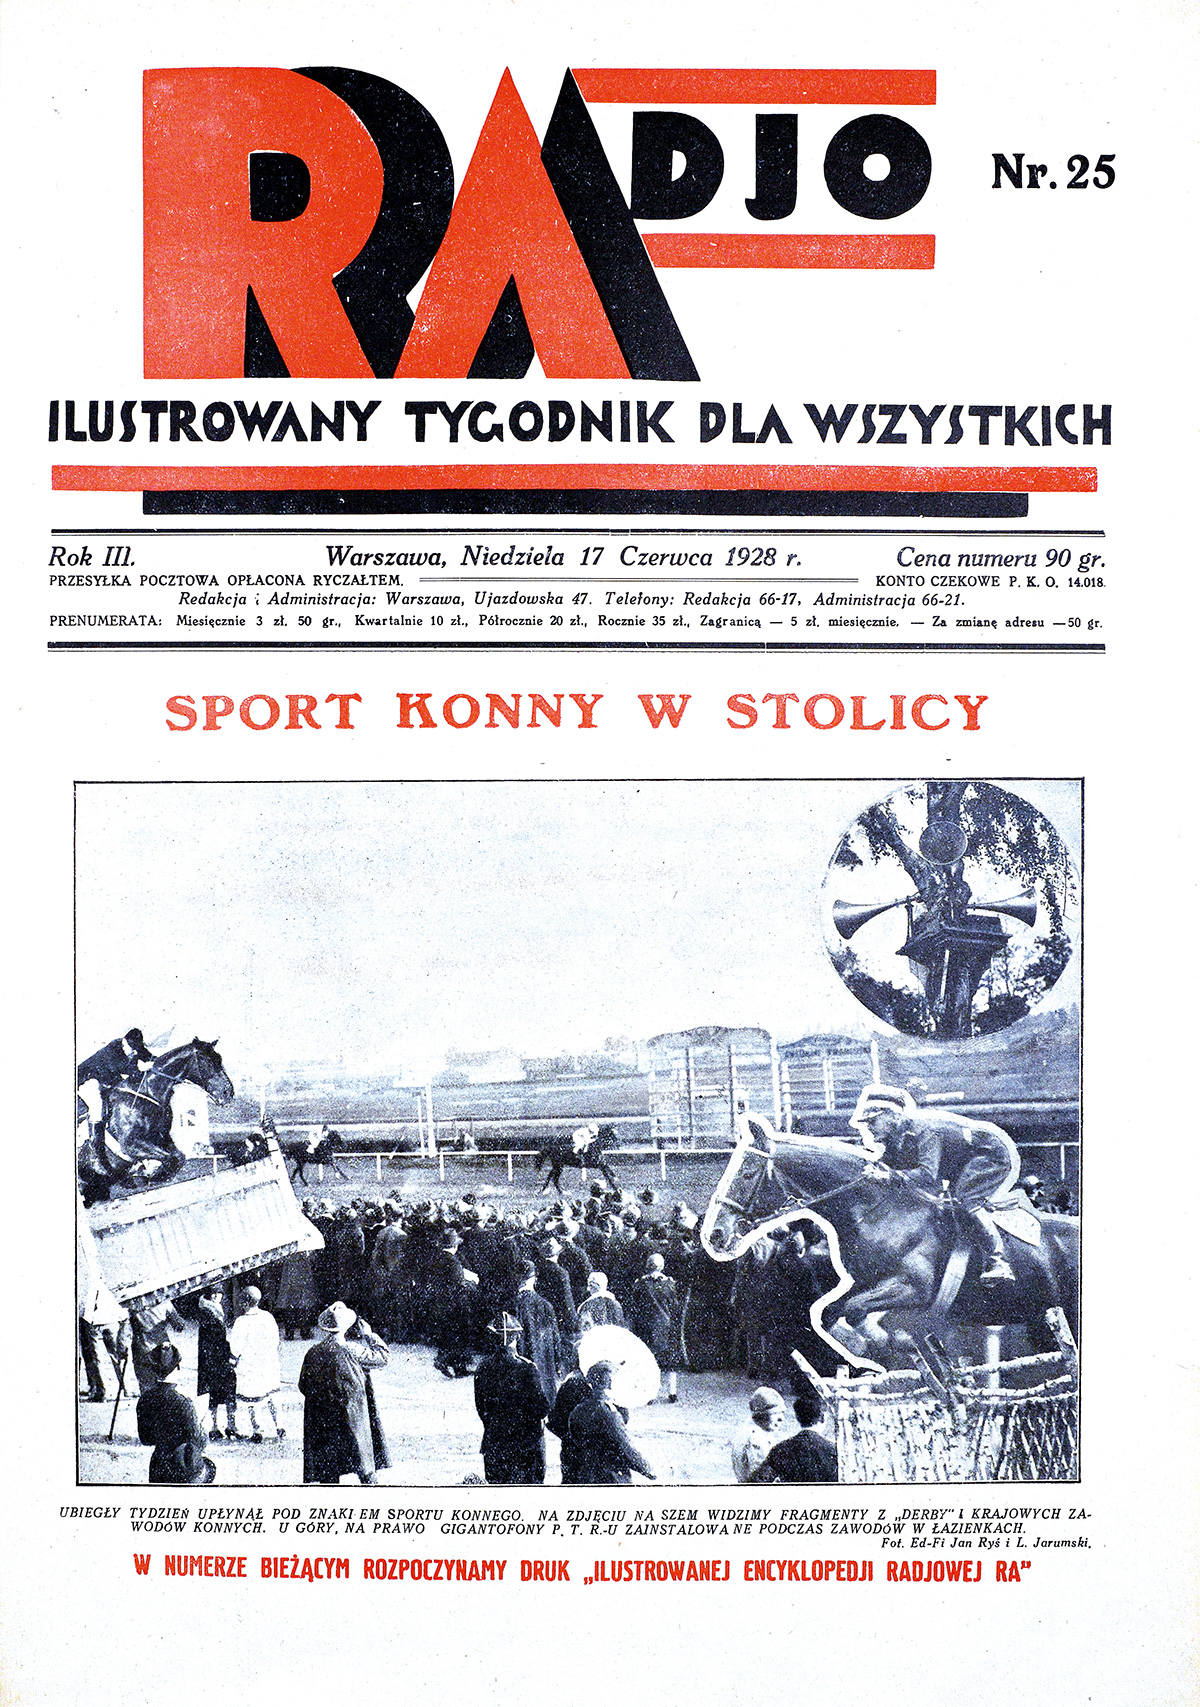 Okładka czasopisma „Radjo” 1928, nr 25. Źródło: Biblioteka Narodowa